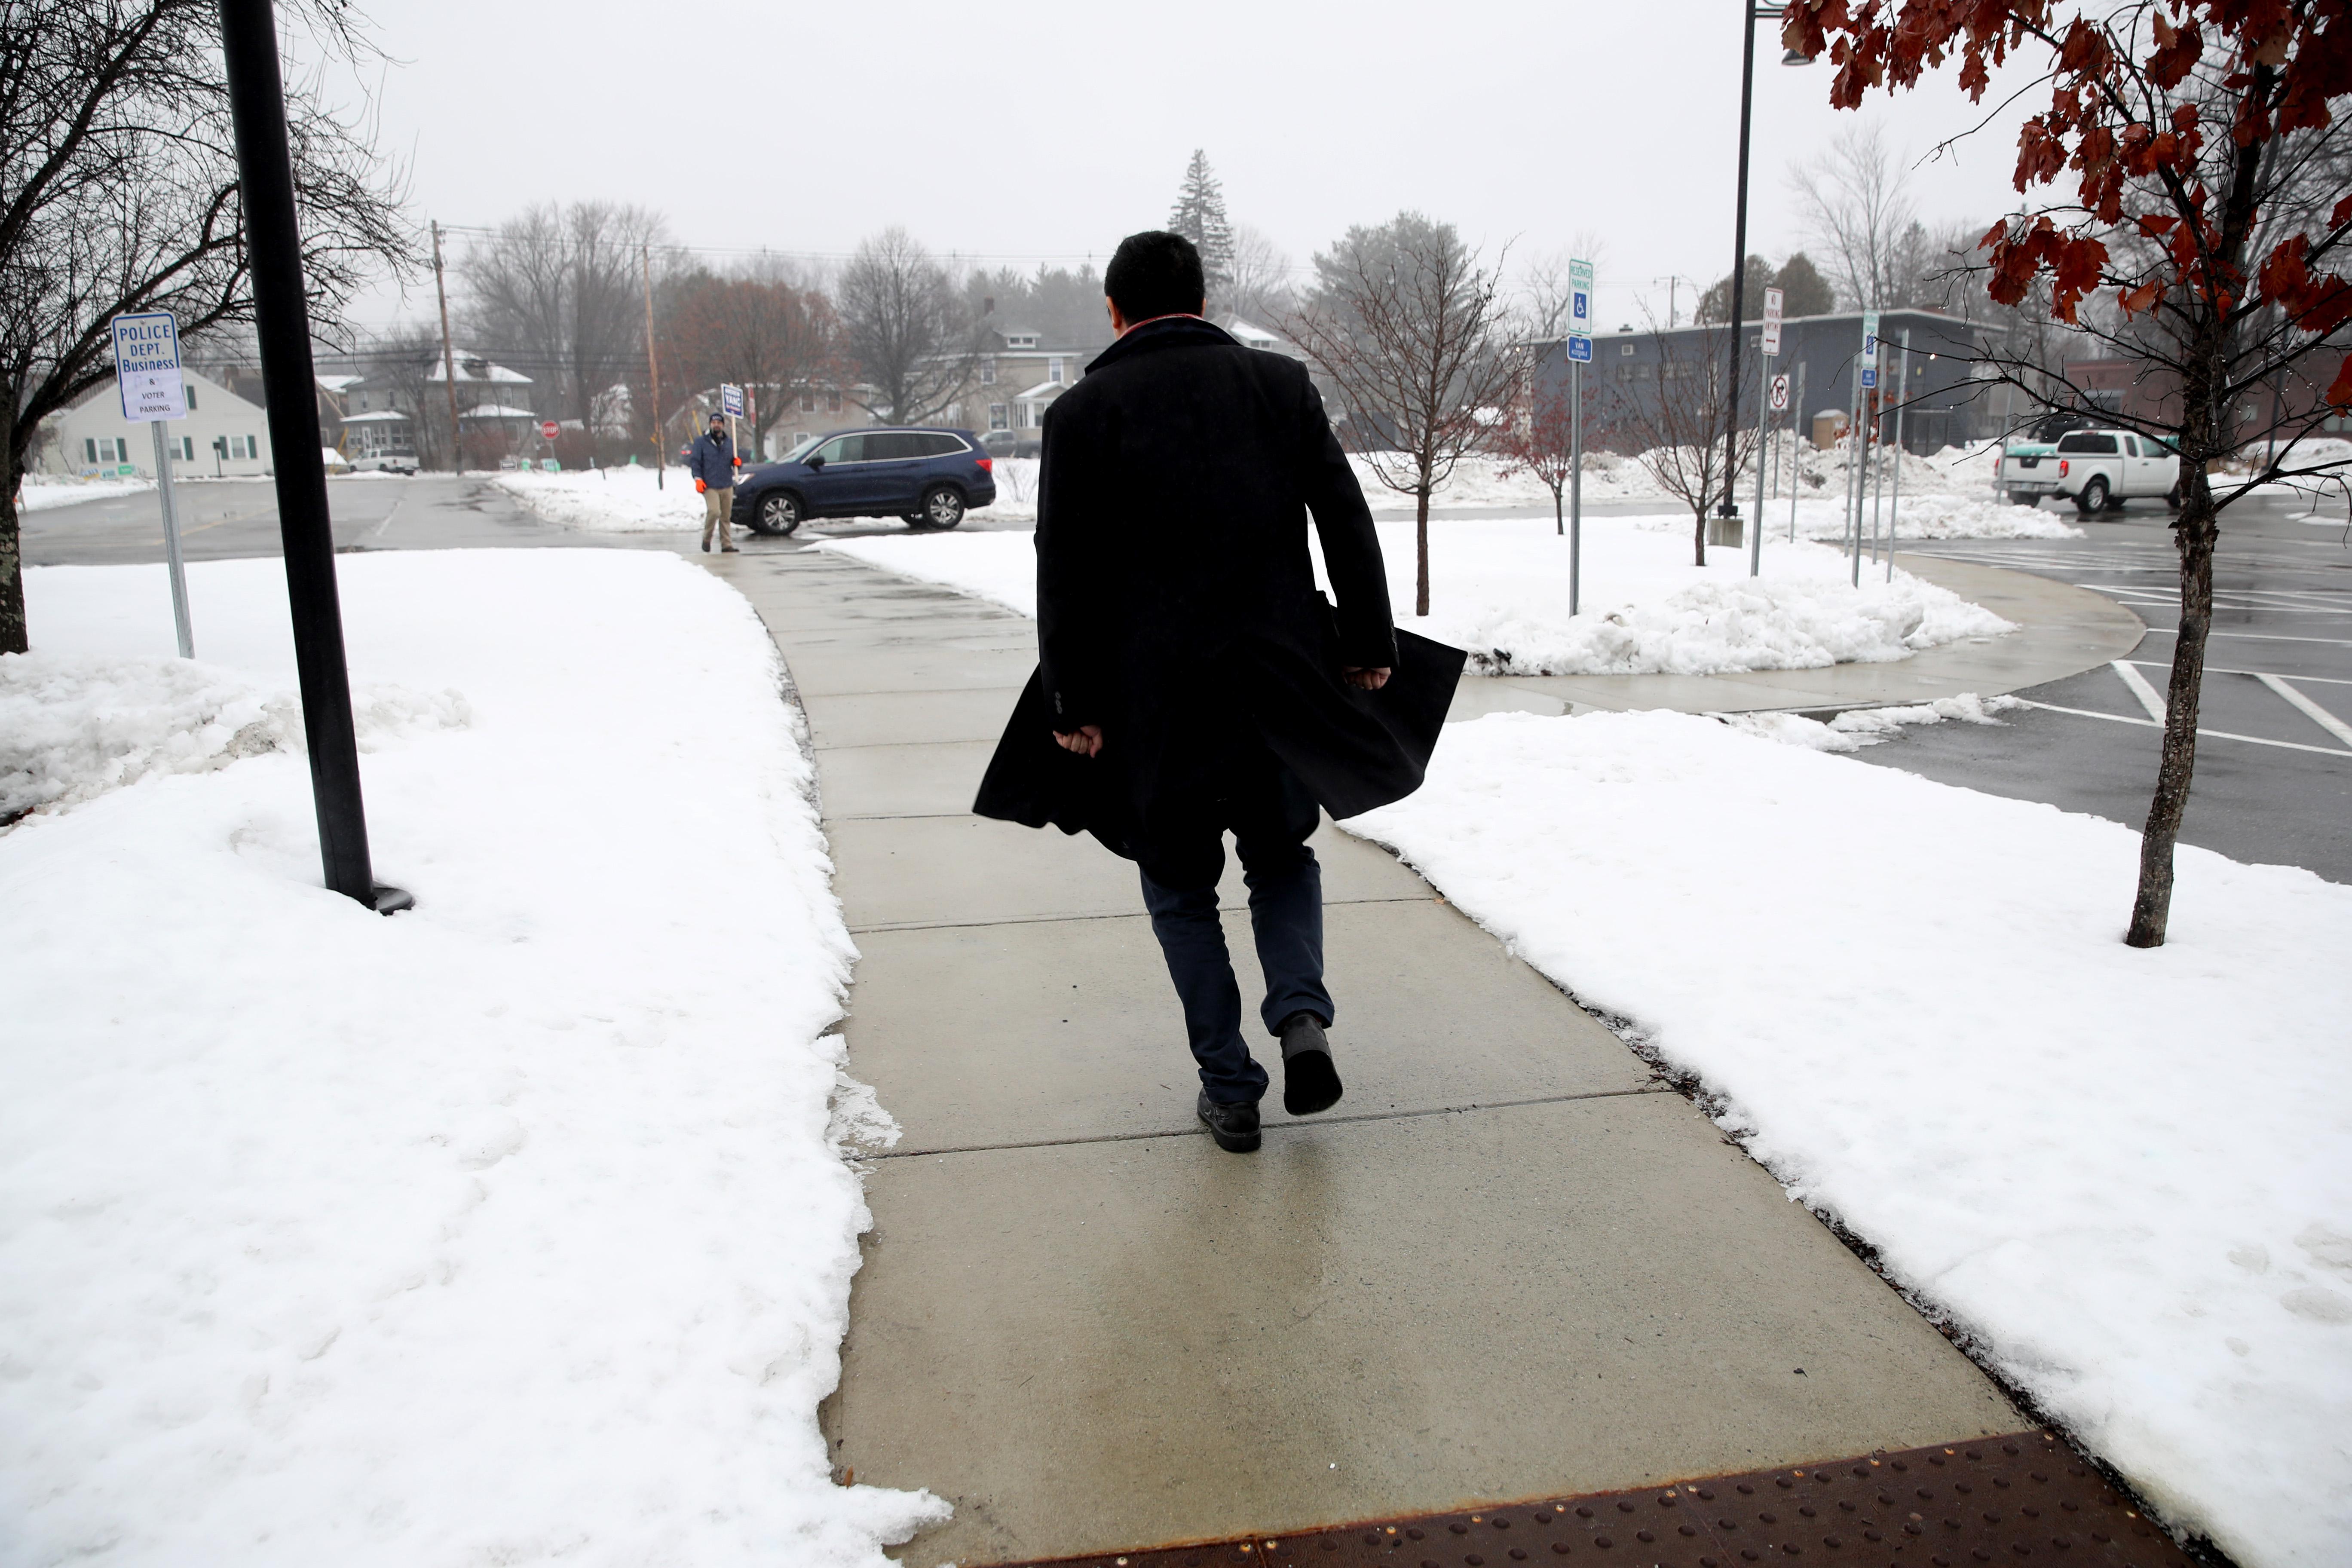 Andrew Yang walks alone on a snowy sidewalk